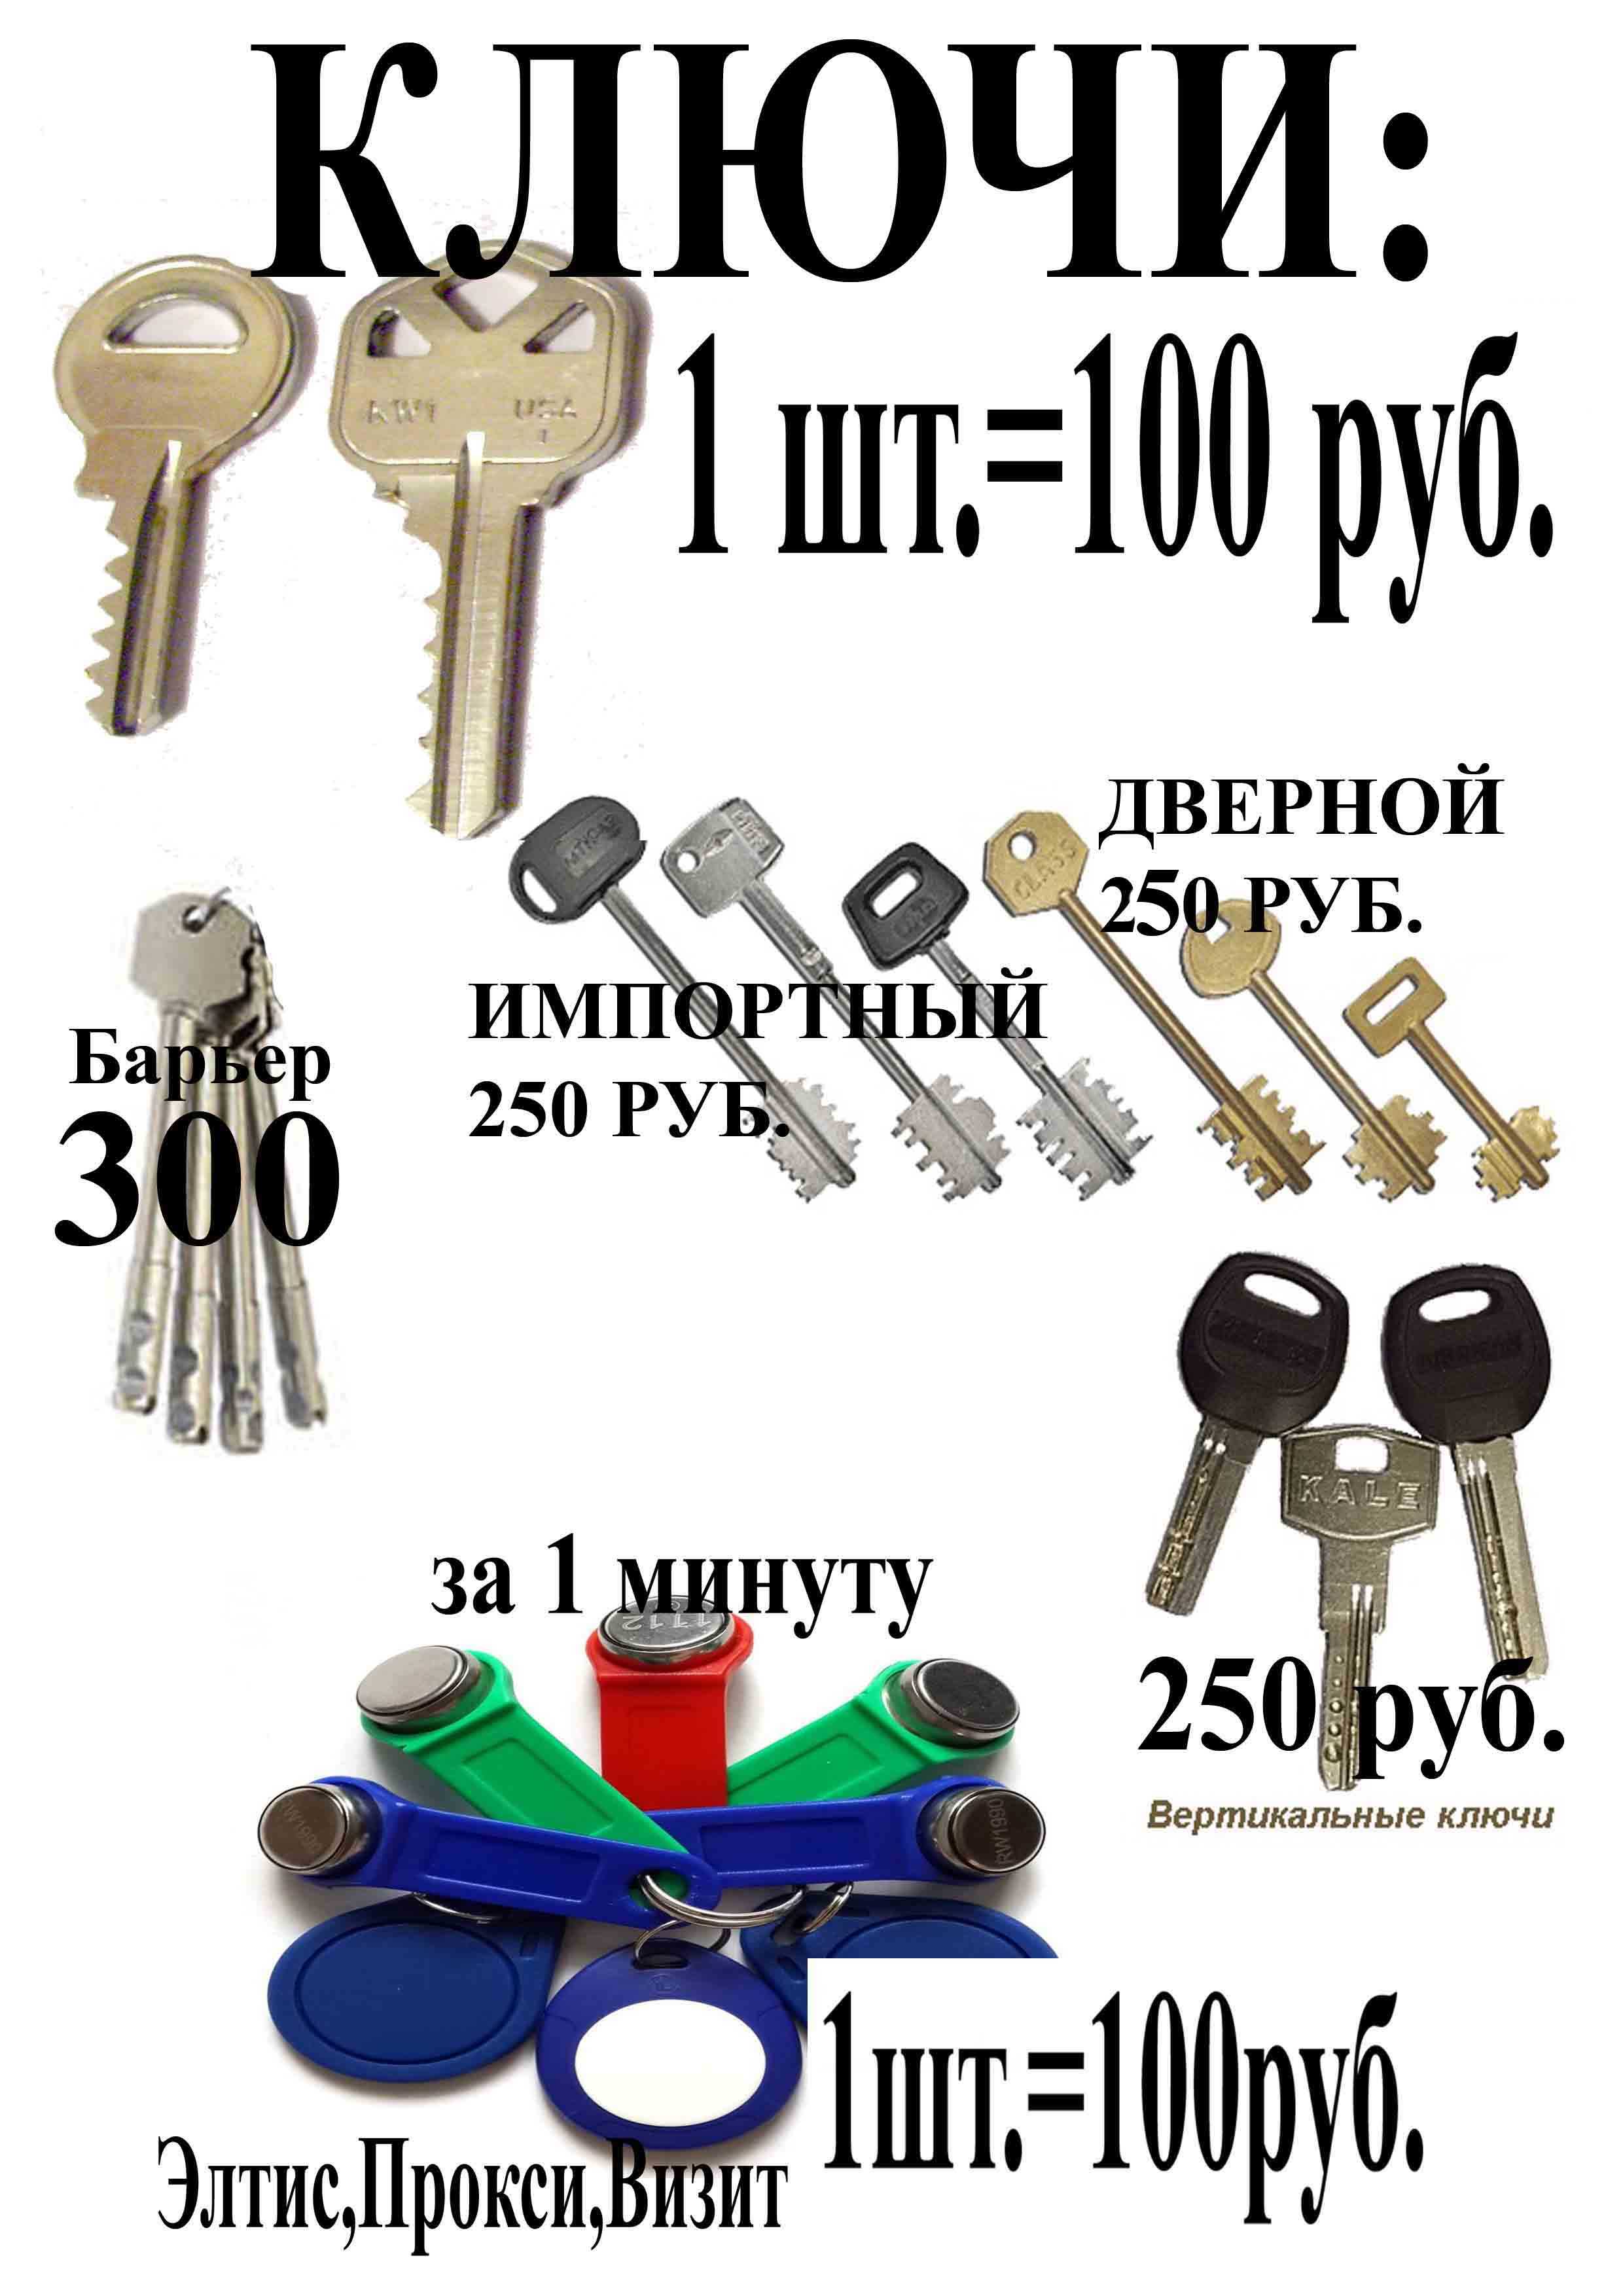 Ключи ремонт часов. Реклама ключей. Ремонт ключей. Реклама по изготовлению ключей. Копия ключей.